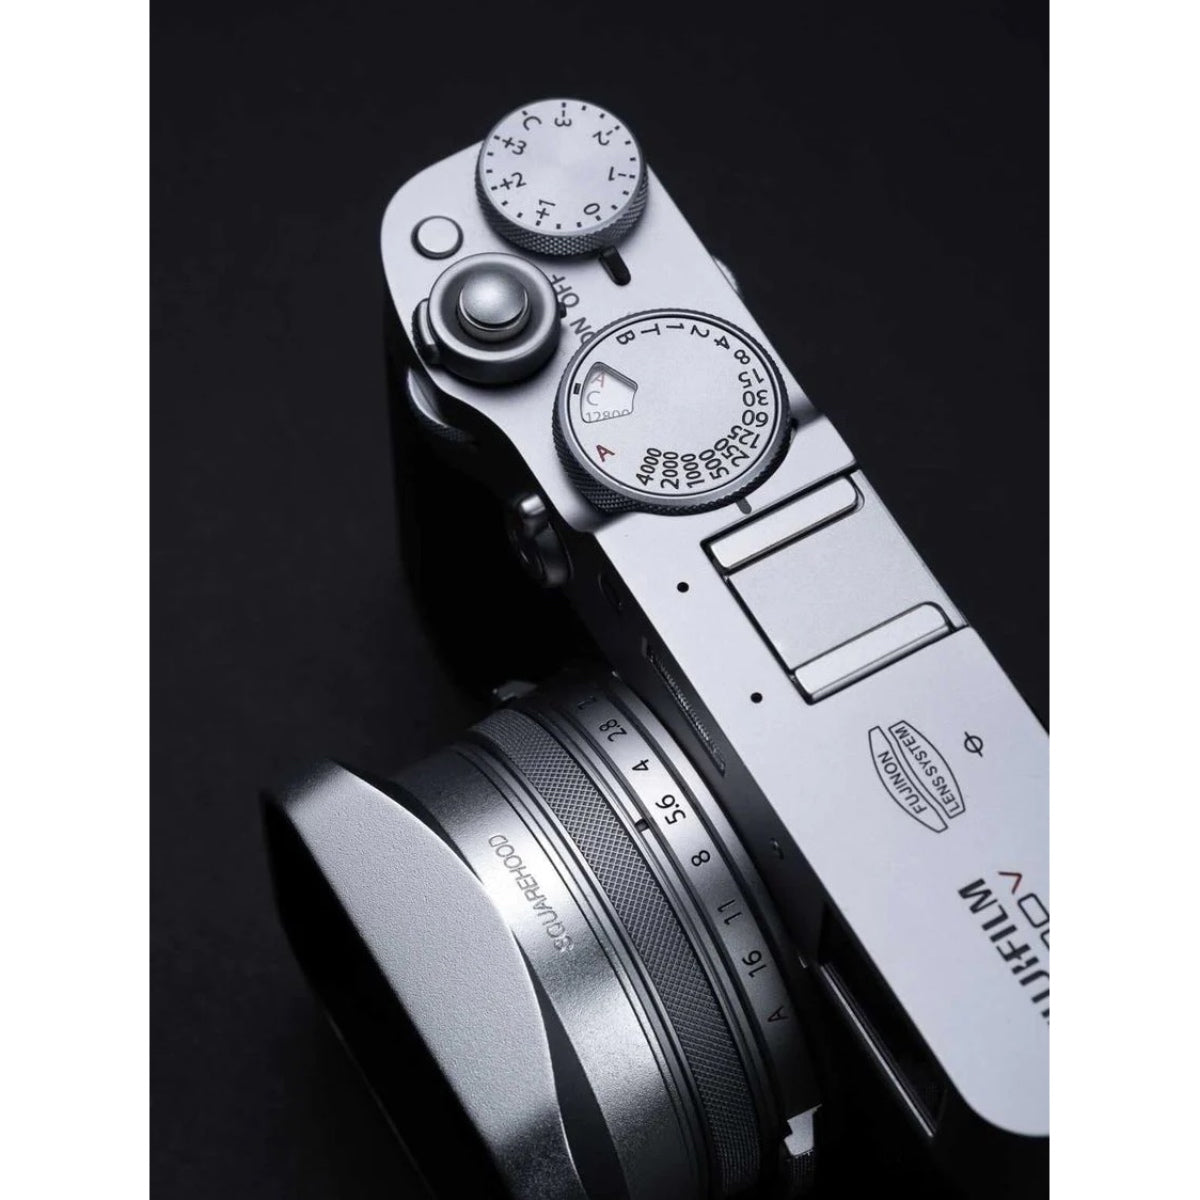 SquareHood Model P for Fuji X100 Cameras